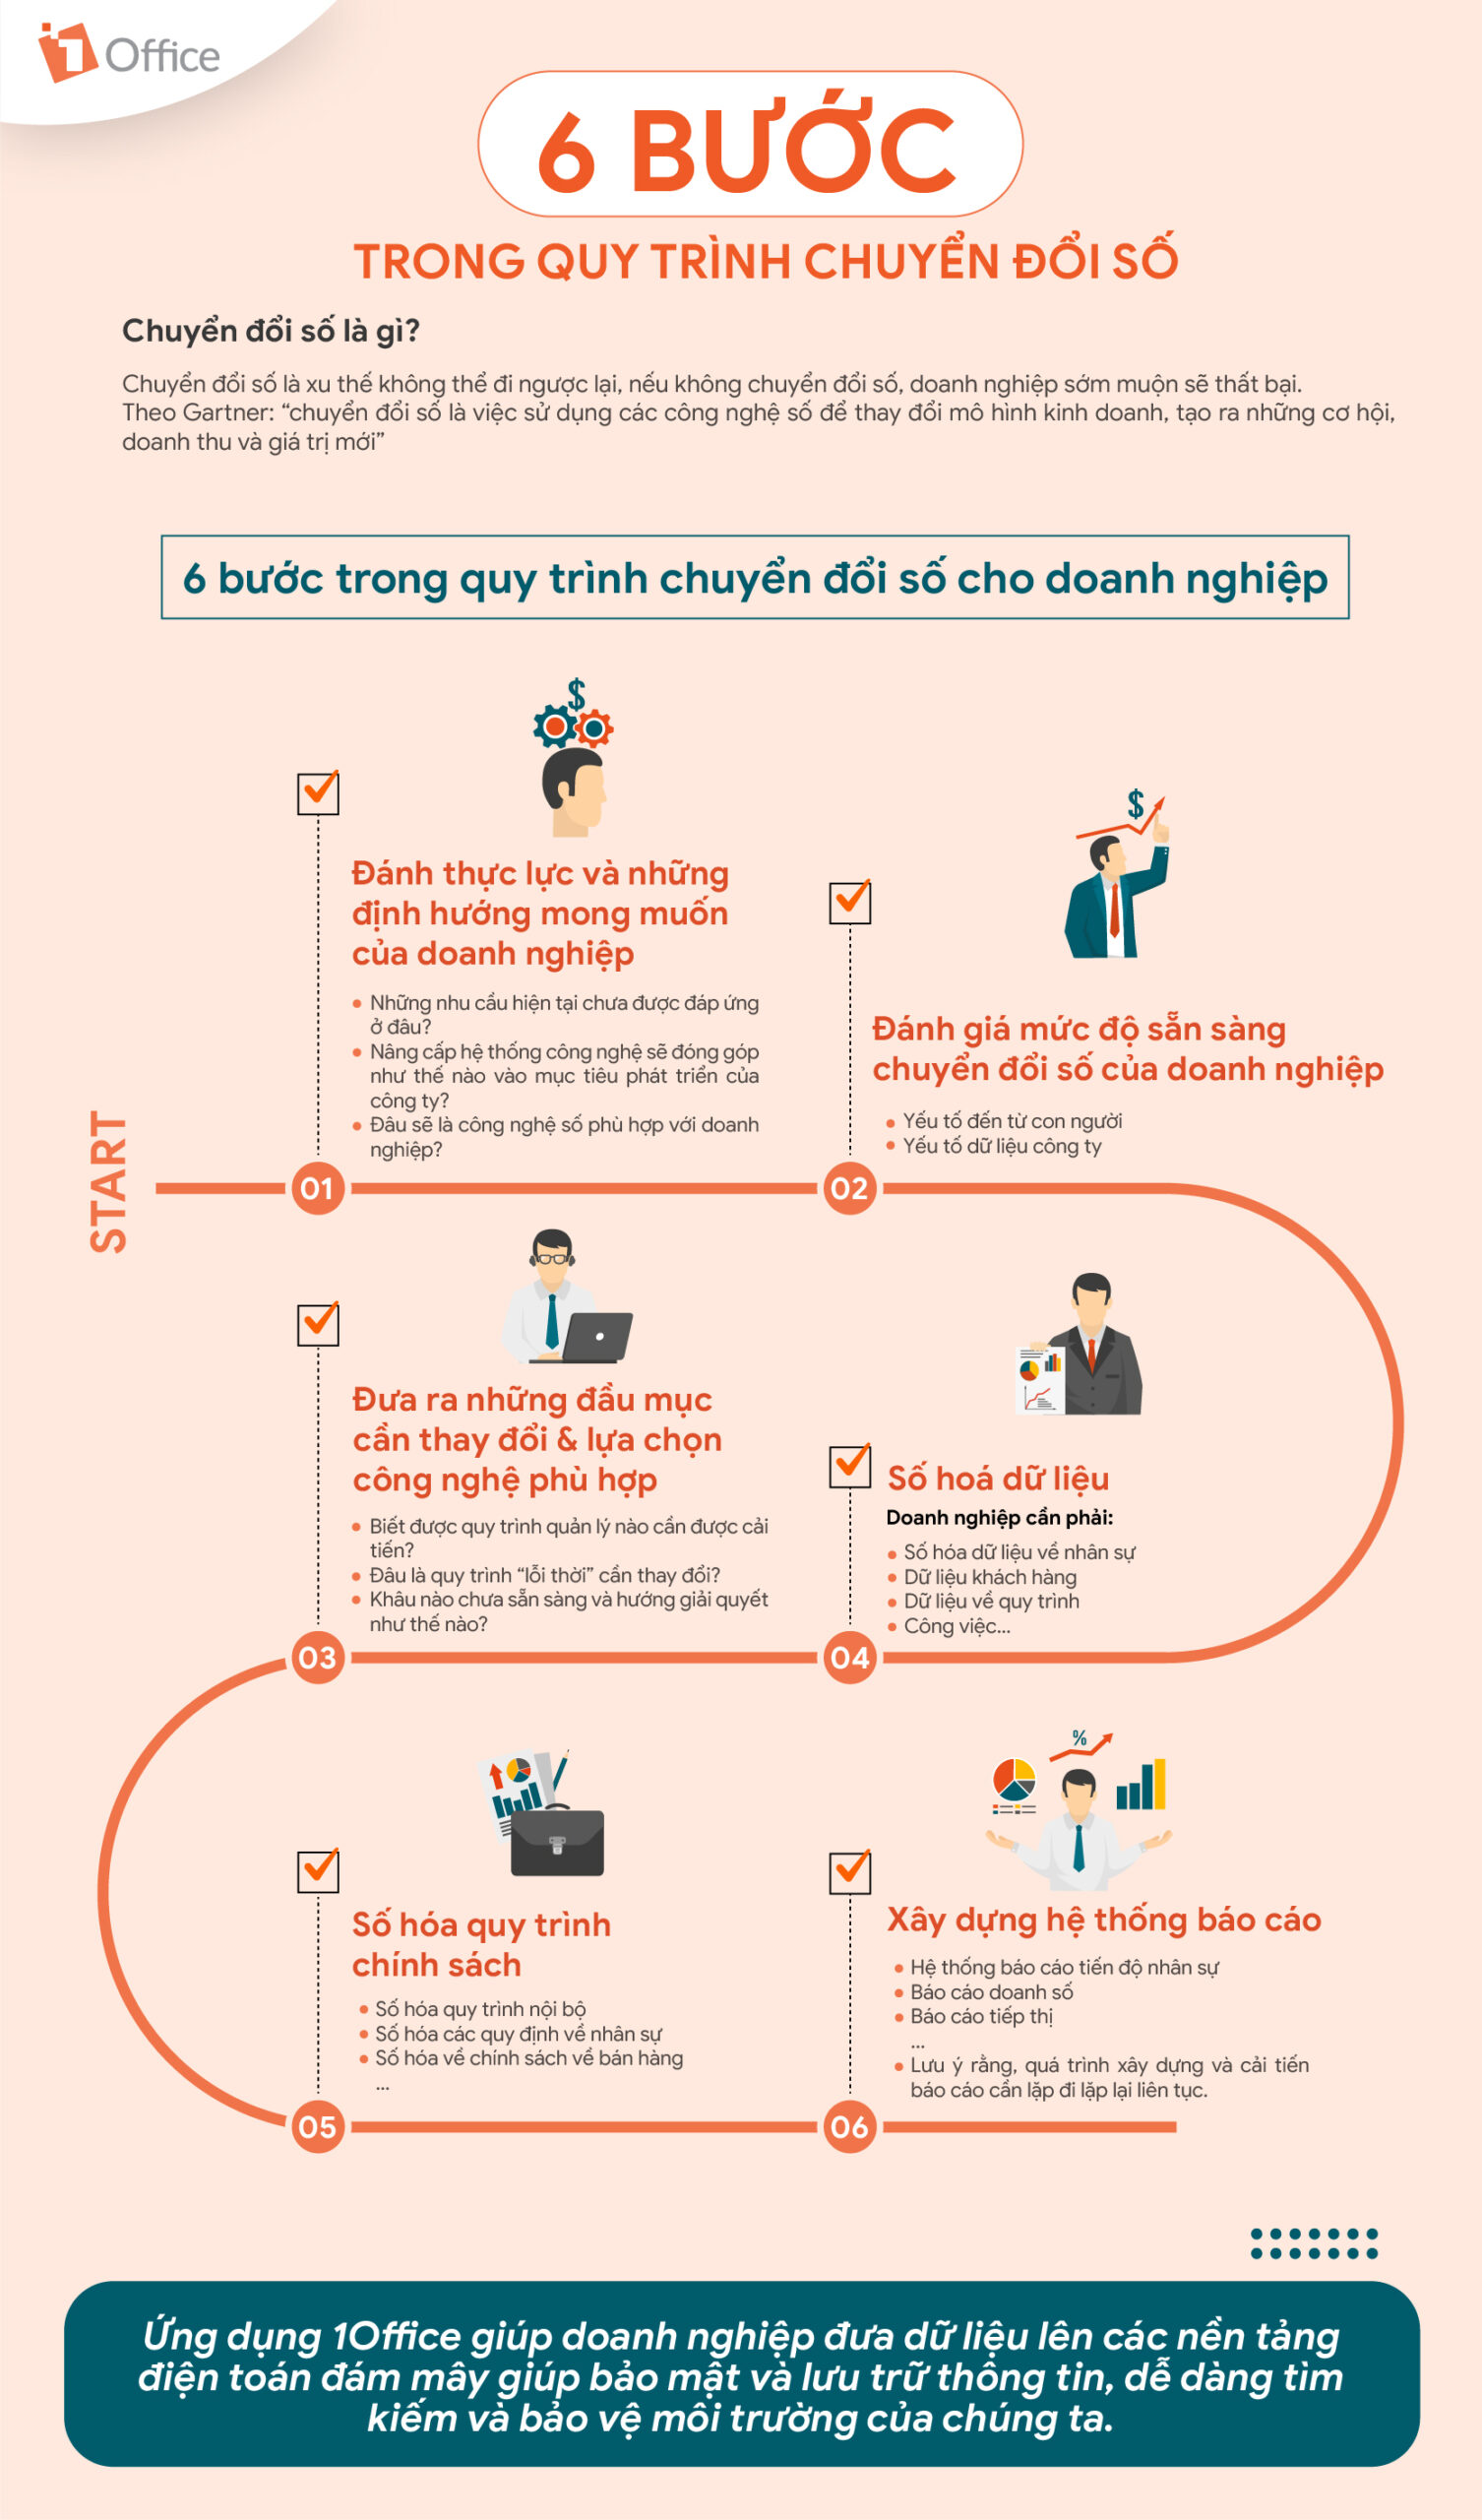 [Infographic] 6 bước trong quy trình chuyển đổi số